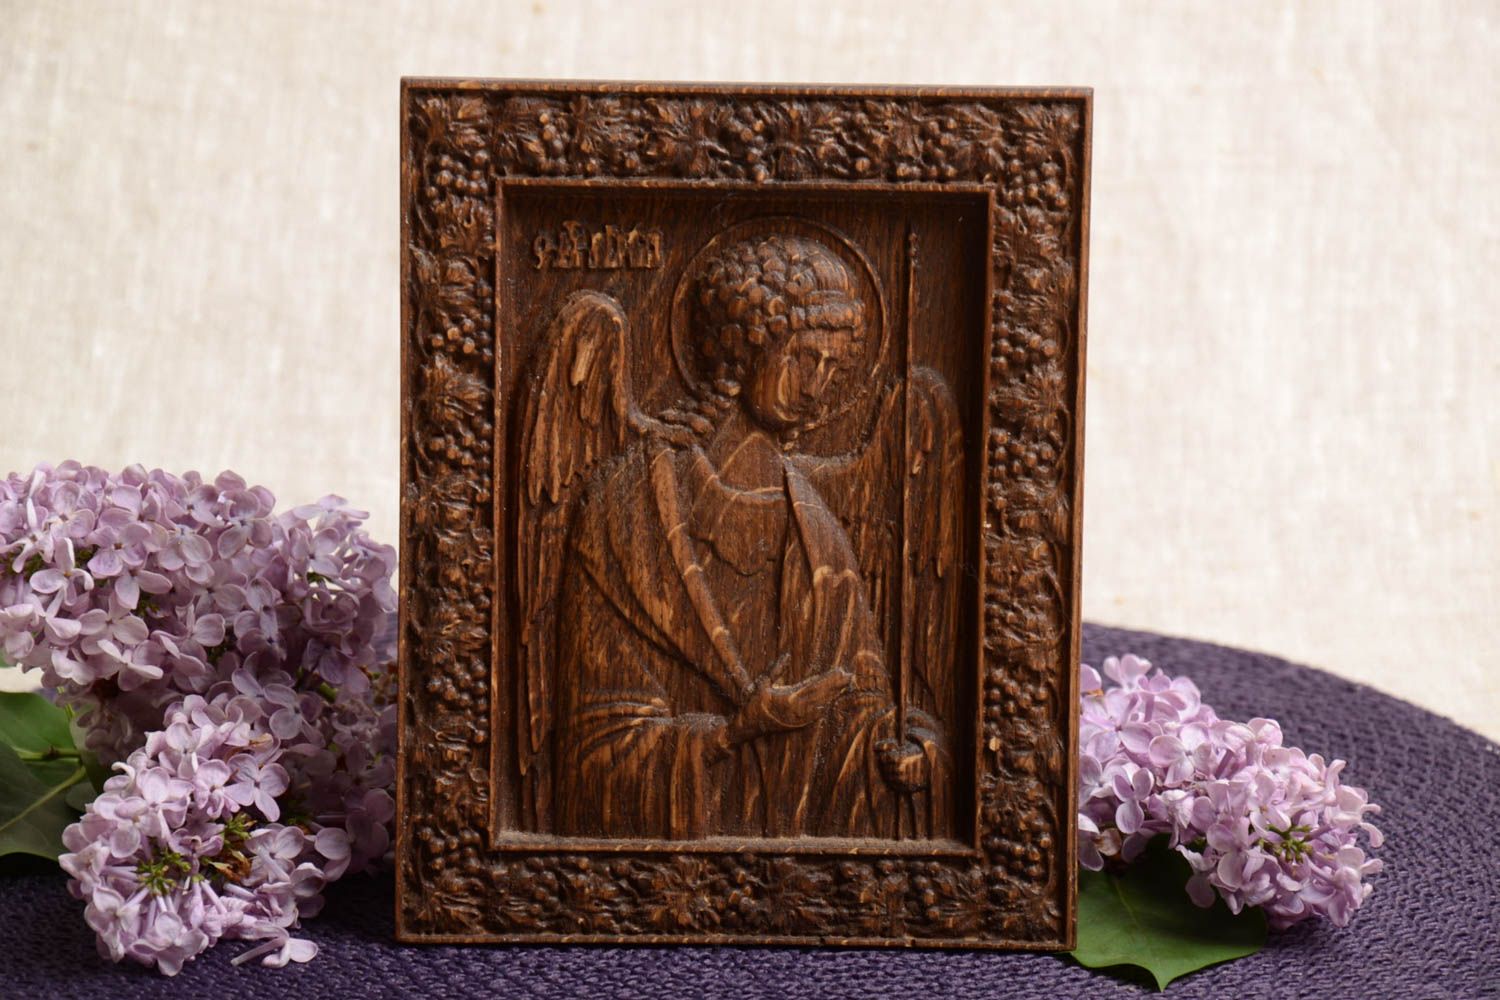 Резная икона из дерева с архангелом Михаилом небольшого размера ручная работа фото 1